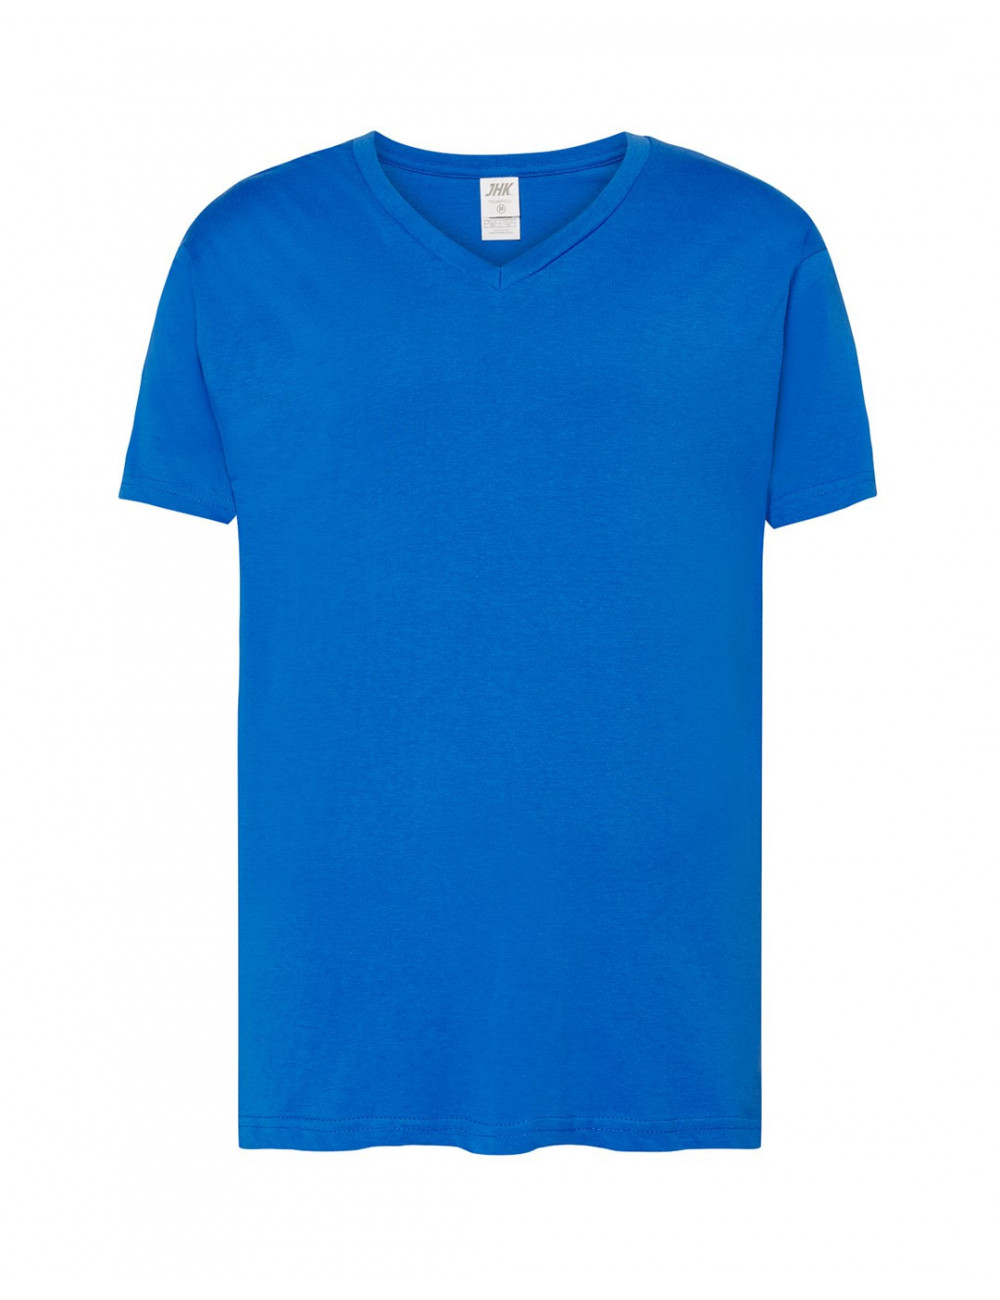 Koszulka męska tsua pico urban v-neck royal niebieski Jhk